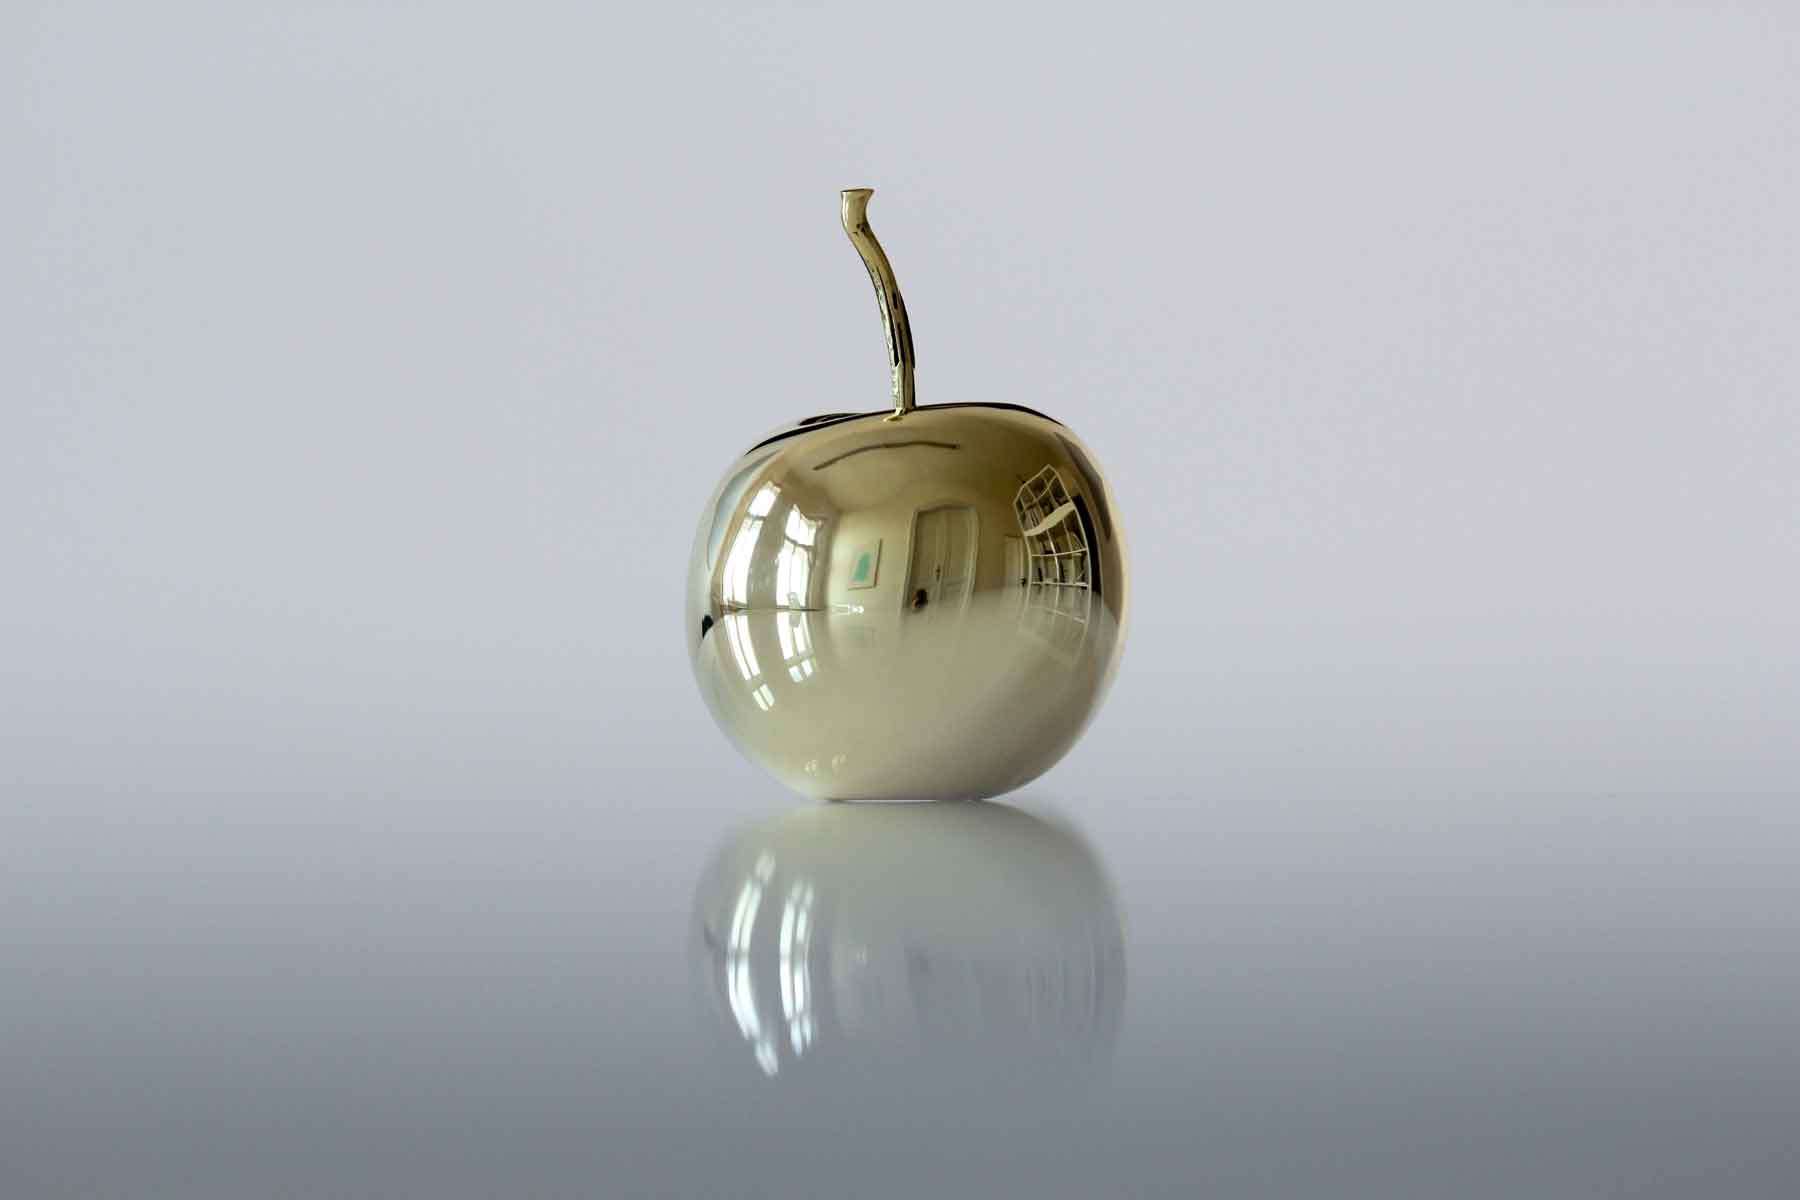 Golden Apple, Sculpture by Jaromir Gargulak